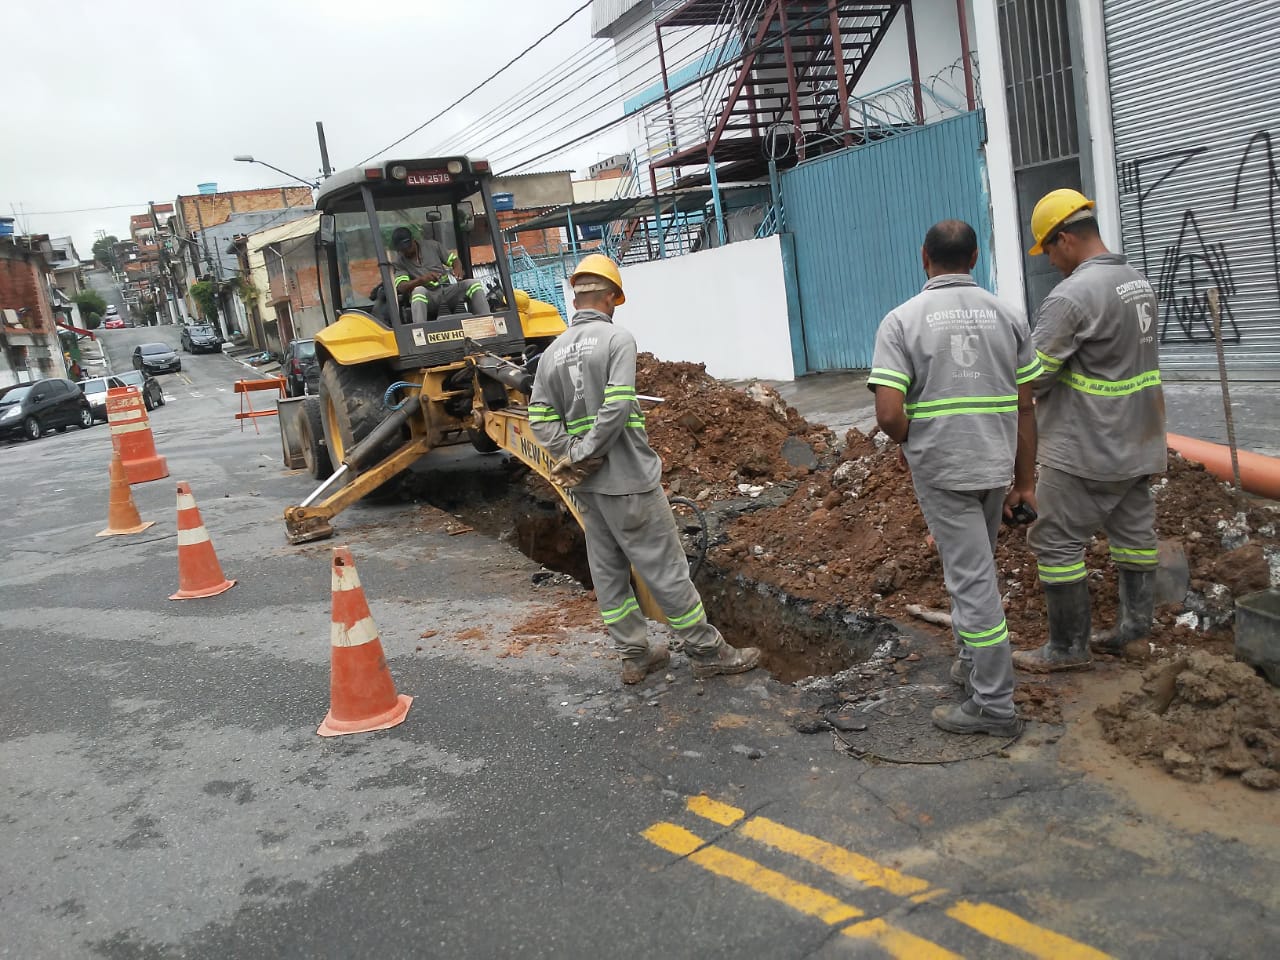 #PraCegoVer - Escavadeira abre a via para início dos trabalhos de recuperação. Em volta há trabalhadores da Subprefeitura.